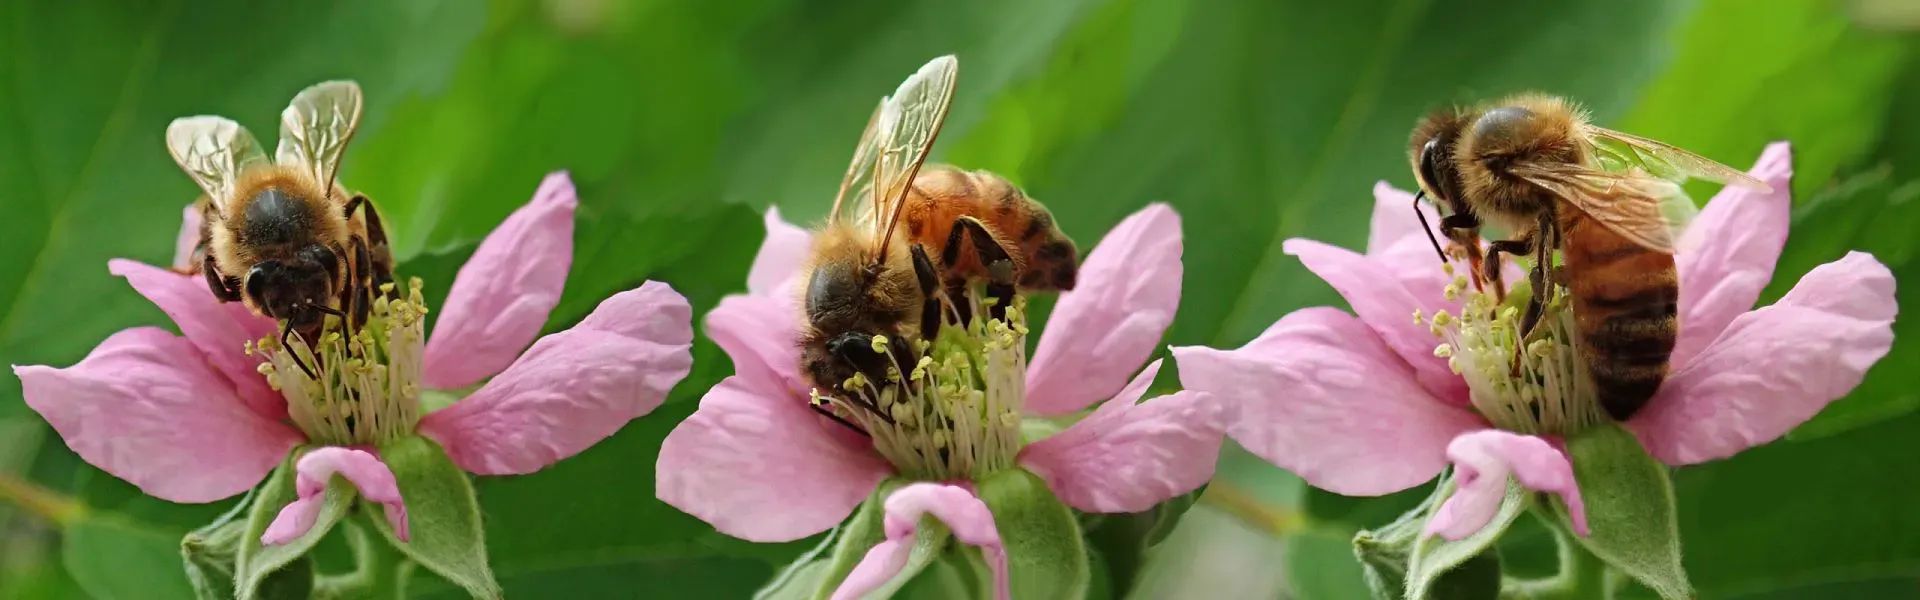 Bienen auf Blumen - Region St. Johann in Tirol